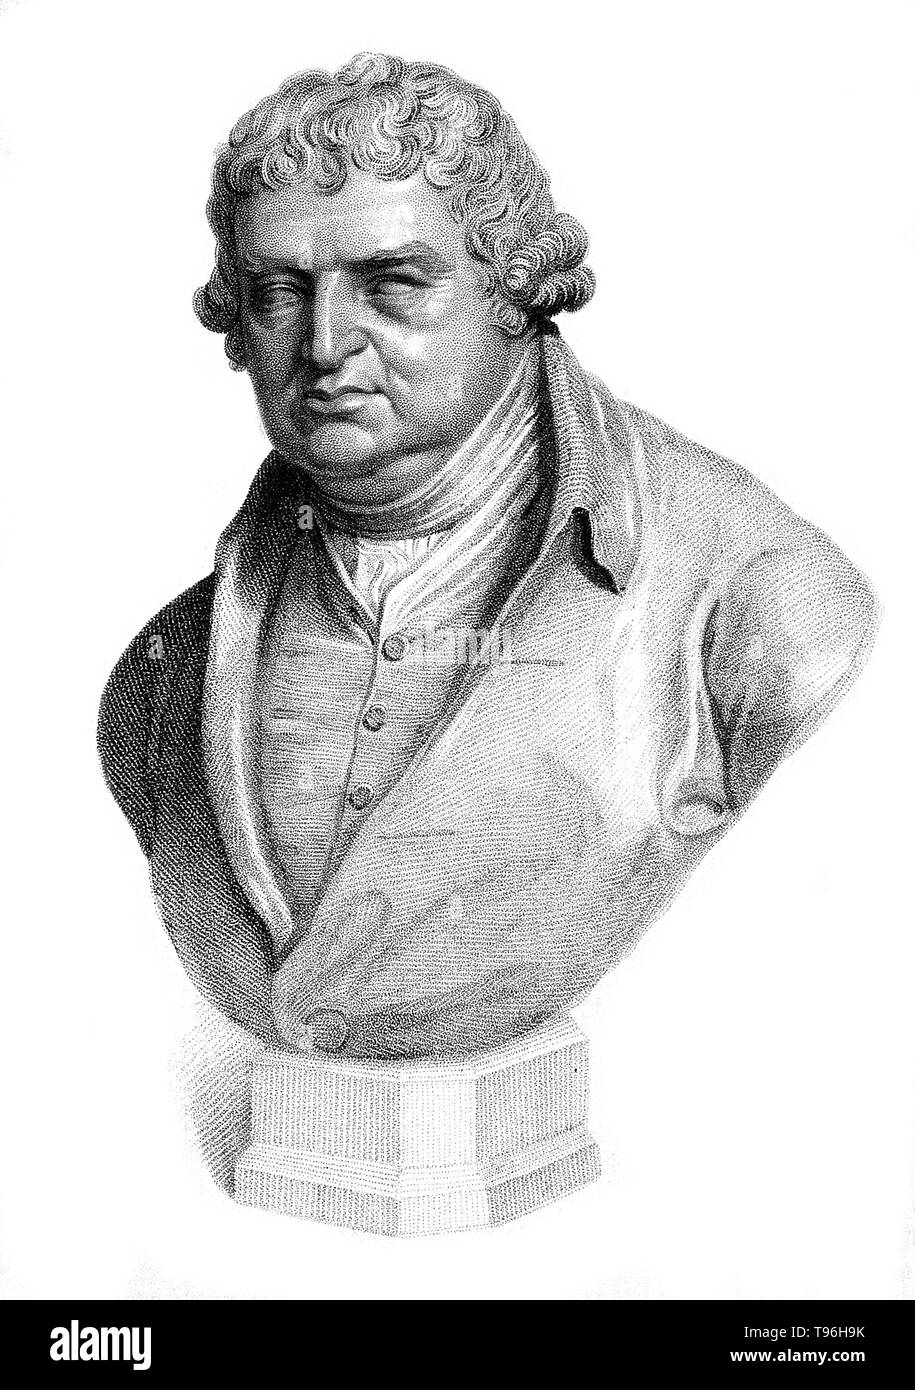 Erasmus Darwin (12 décembre 1731 - 18 avril 1802) était un médecin anglais. L'un des principaux penseurs de l'illumination des Midlands, il était aussi un philosophe naturel, physiologiste, des esclaves abolitionniste, inventeur et poète. Il a inventé un mécanisme de direction, un manuscrit et un copieur machine parlant. Ses poèmes inclus beaucoup d'histoire naturelle, notamment un état de l'évolution et l'interdépendance de toutes les formes de vie. Il a été membre fondateur de la Lunar Society de Birmingham, un groupe de discussion d'industriels et d'avant-garde des philosophes naturels. Ses petits-fils : Charles Dar Banque D'Images